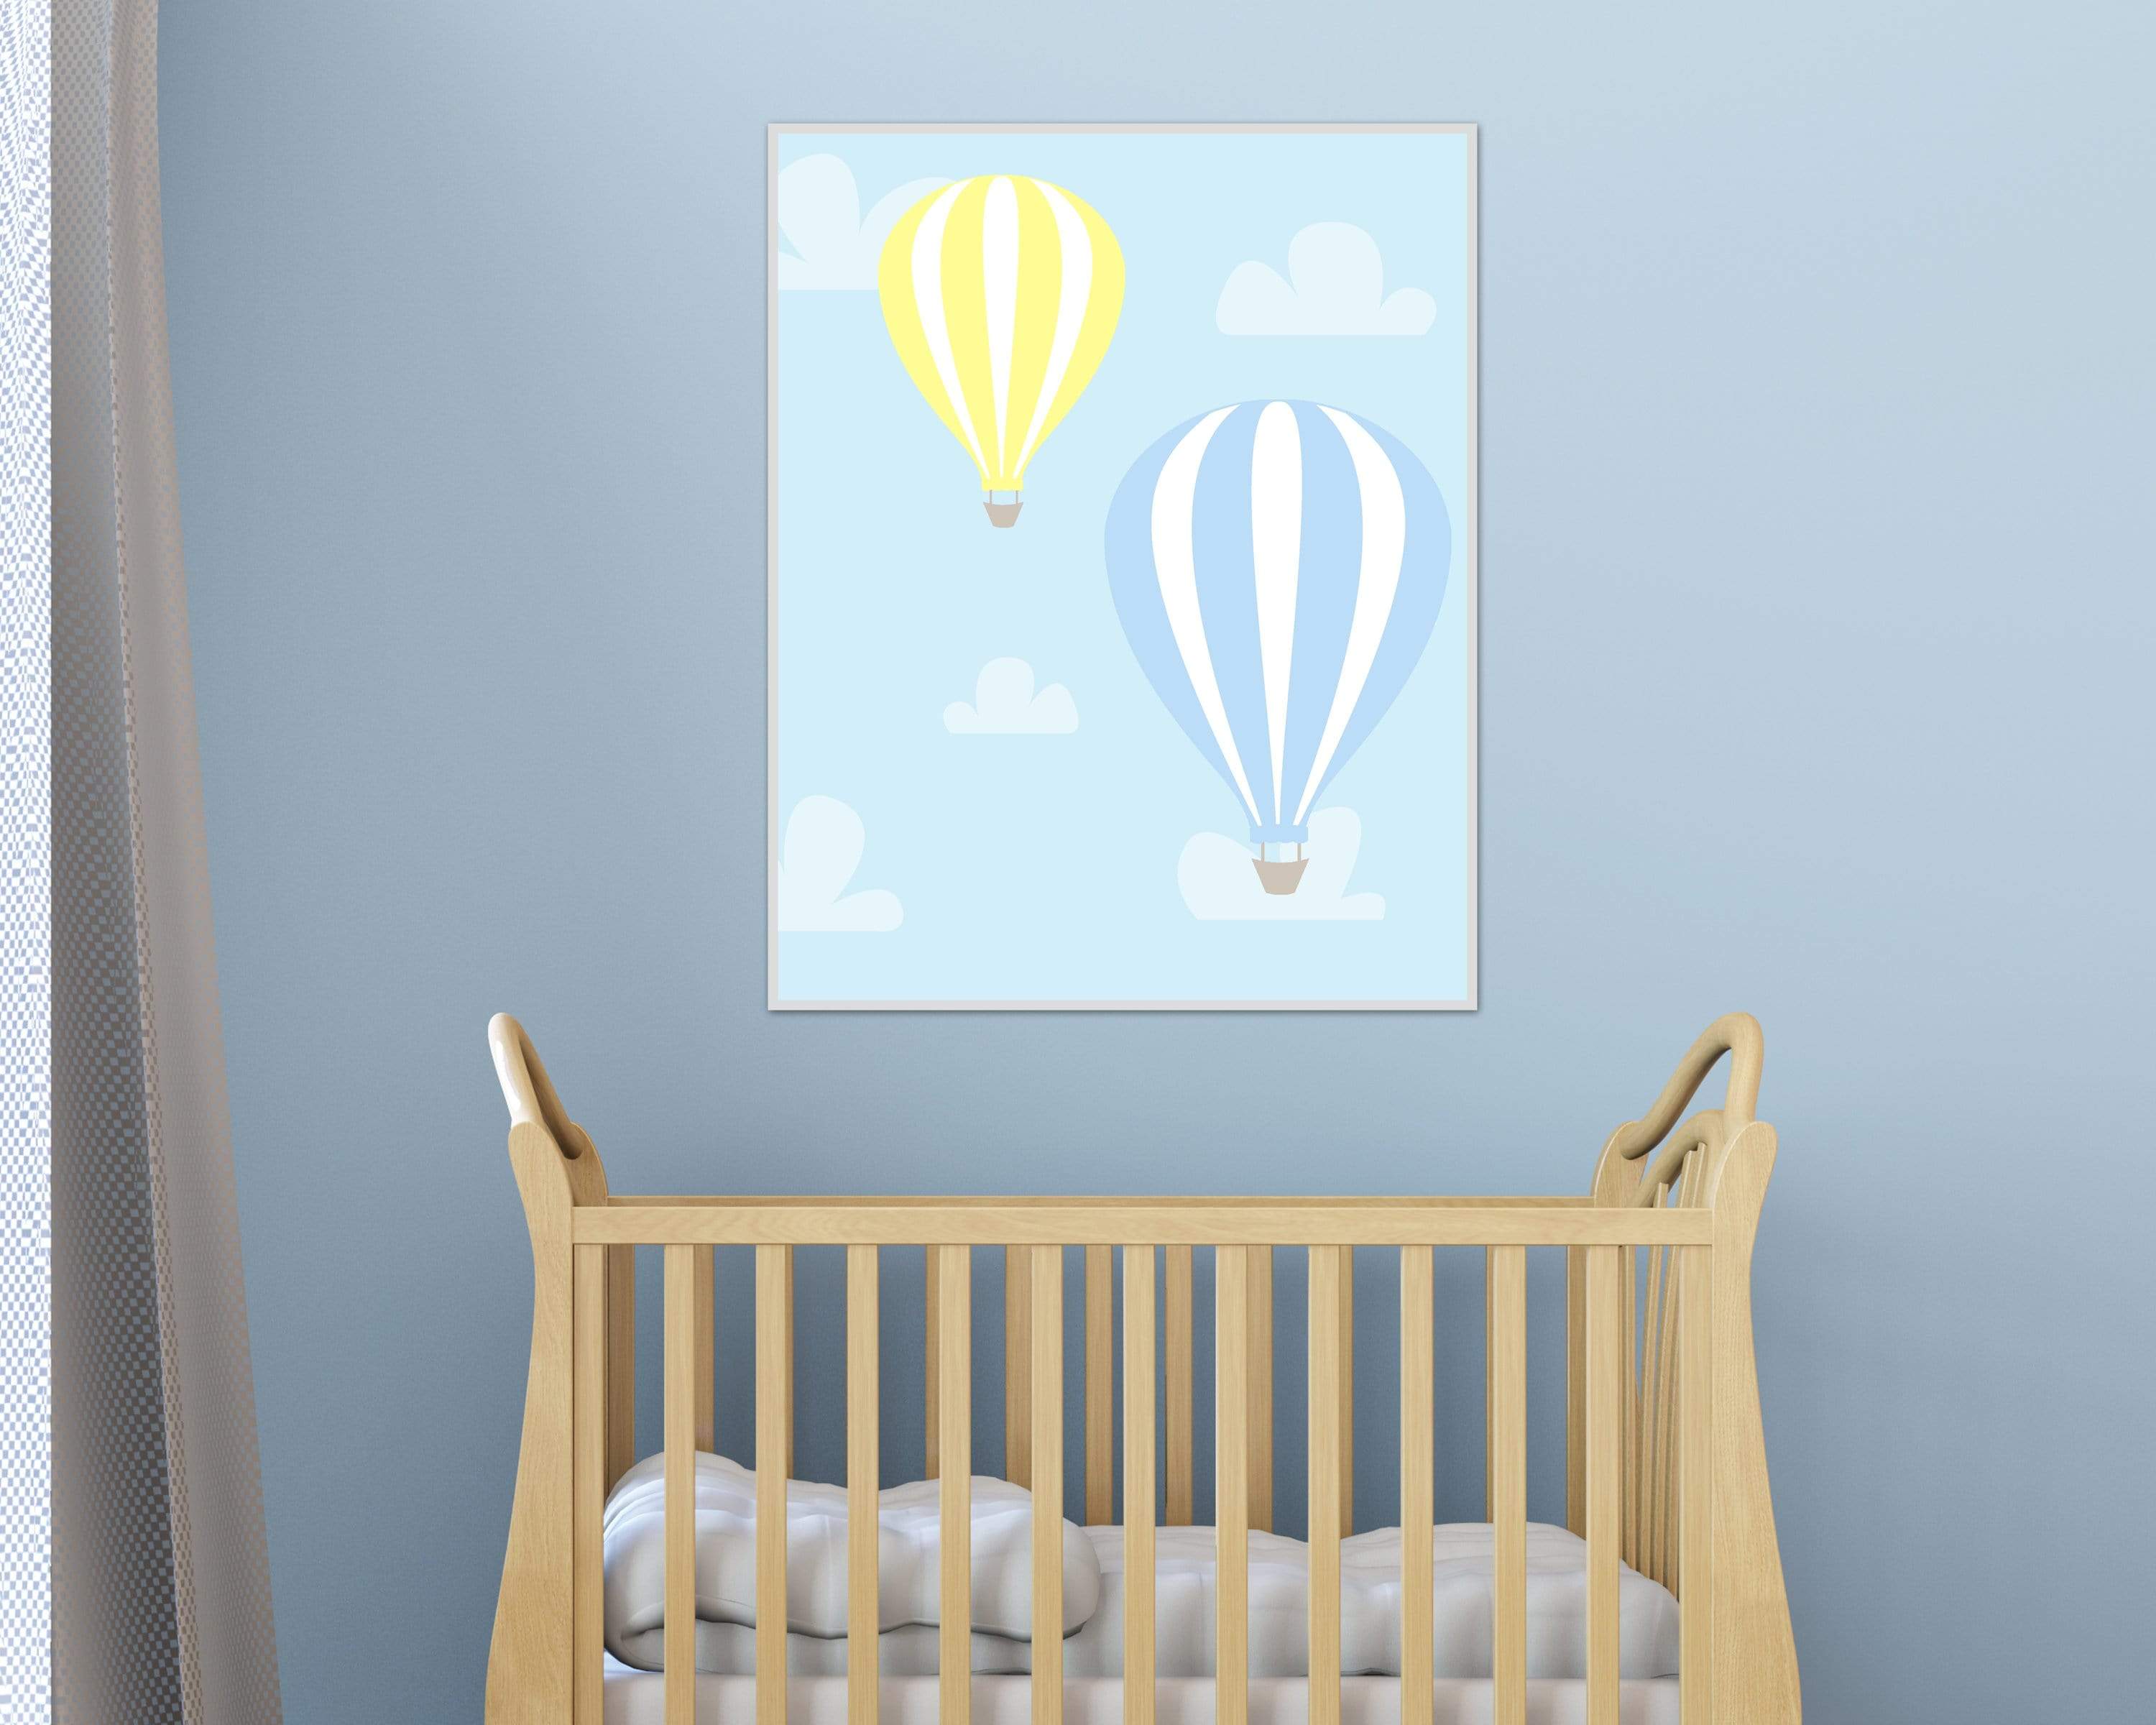 Hot Air Balloon Nursery Art Print, Yellow and Blue Floating Hot Air Balloons, Suits Baby Boys Nursery Decor - Custom Color - H786- Unframed nursery art print baby nursery bedroom decor